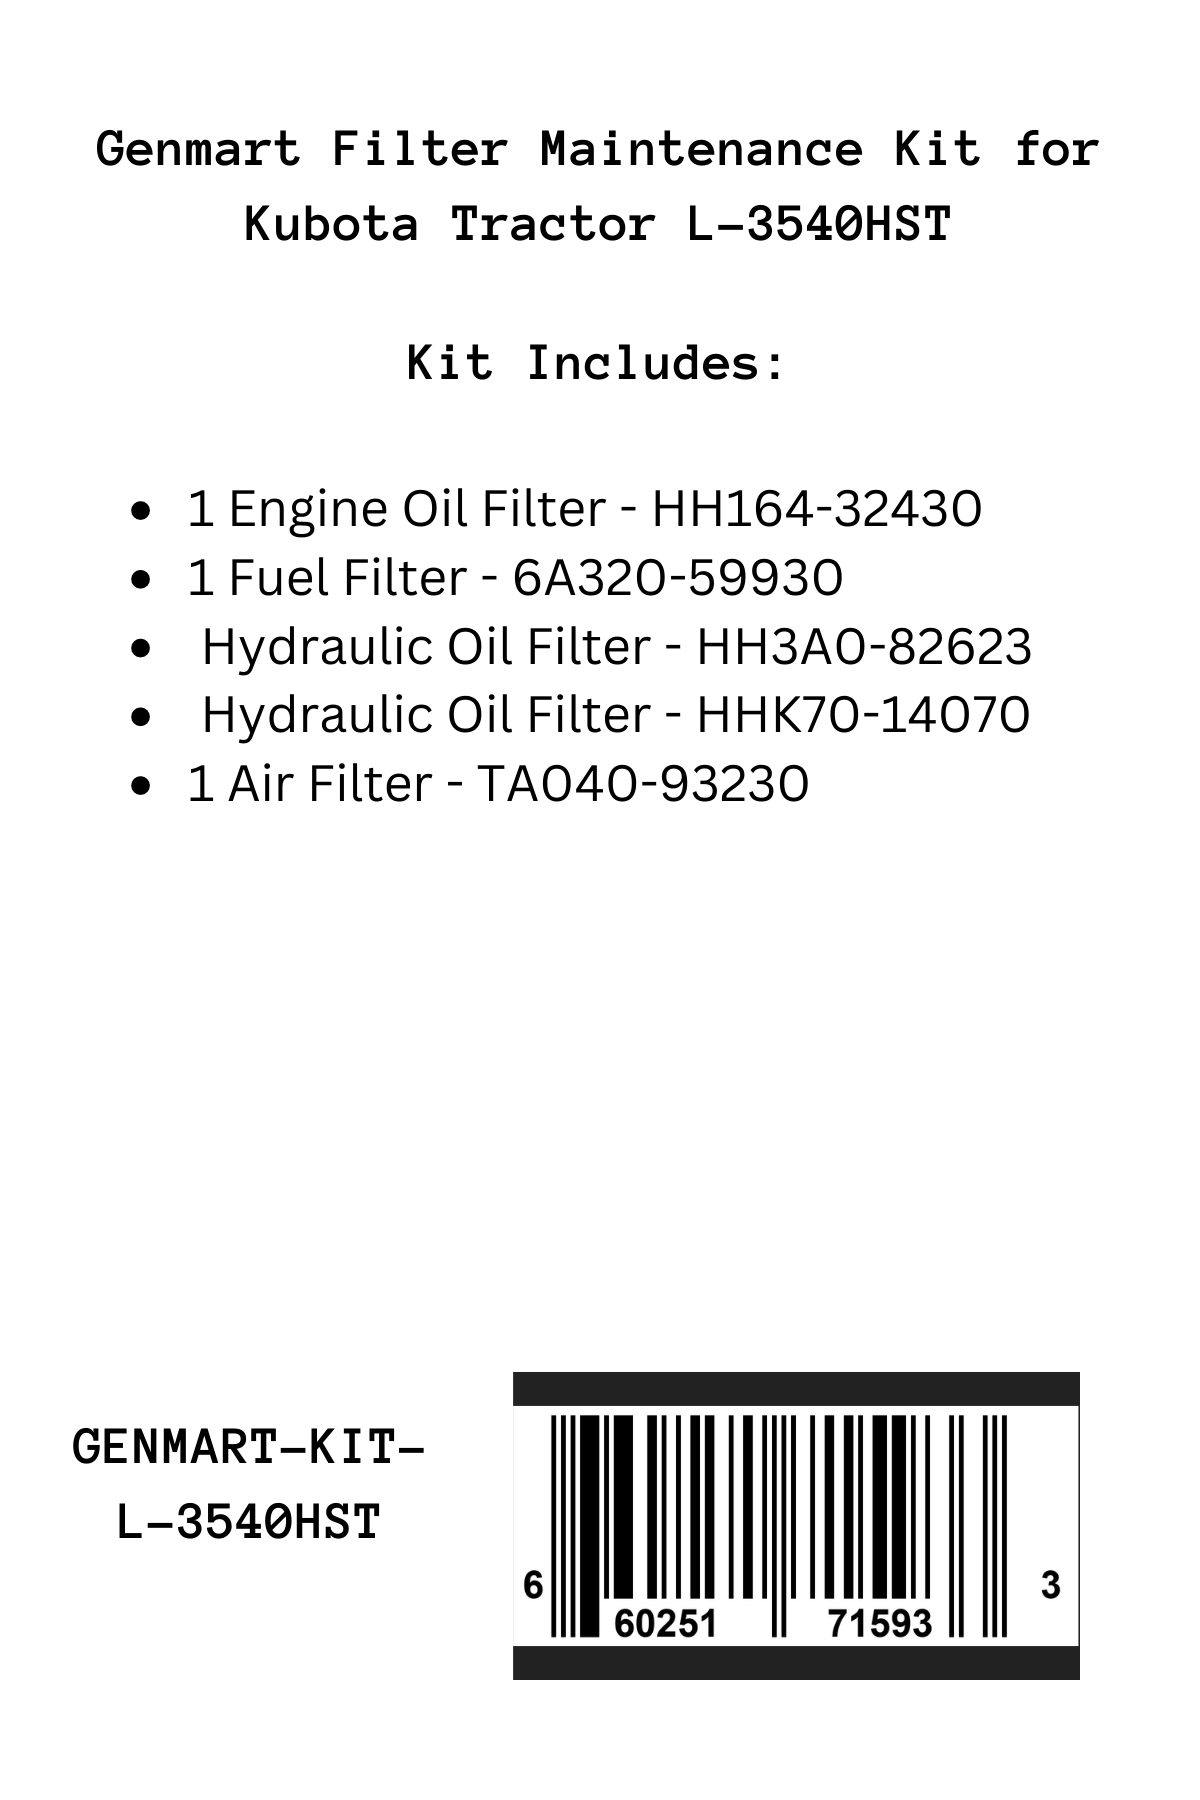 Genmart Maintenance Kit for Kubota Tractor L-3540HST